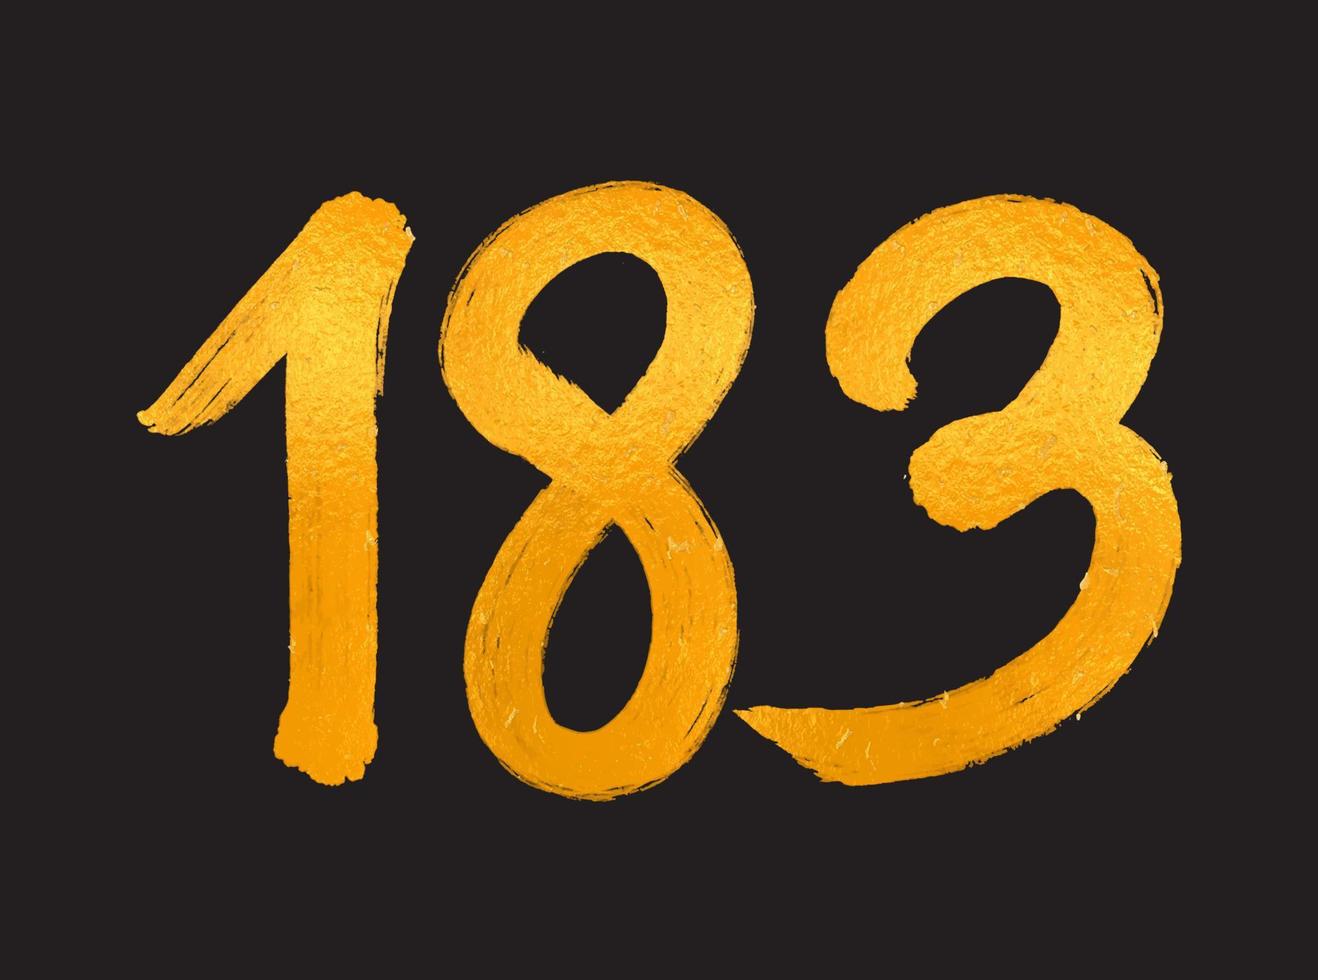 183 numero logo vettore illustrazione, 183 anni anniversario celebrazione vettore modello, 183° compleanno, oro lettering numeri spazzola disegno mano disegnato schizzo, numero logo design per Stampa, t camicia